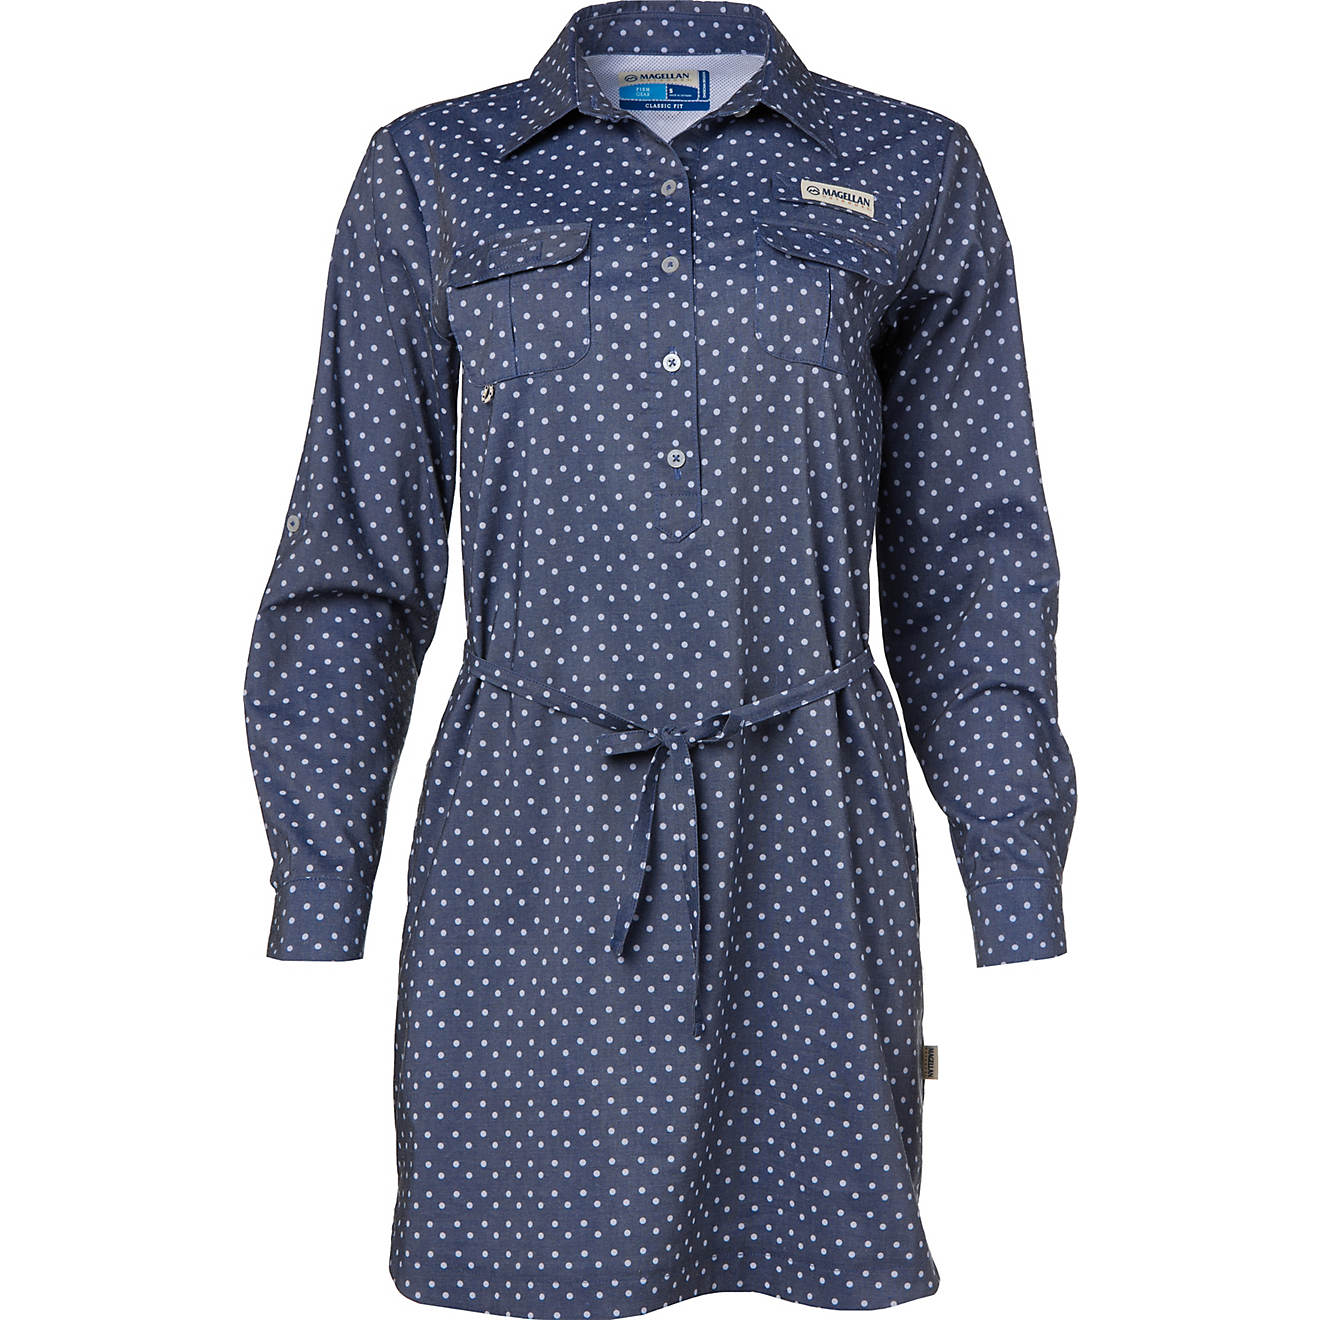 Magellan Outdoors Women's Southern Summer Print Long Sleeve Shirt Dress                                                          - view number 1